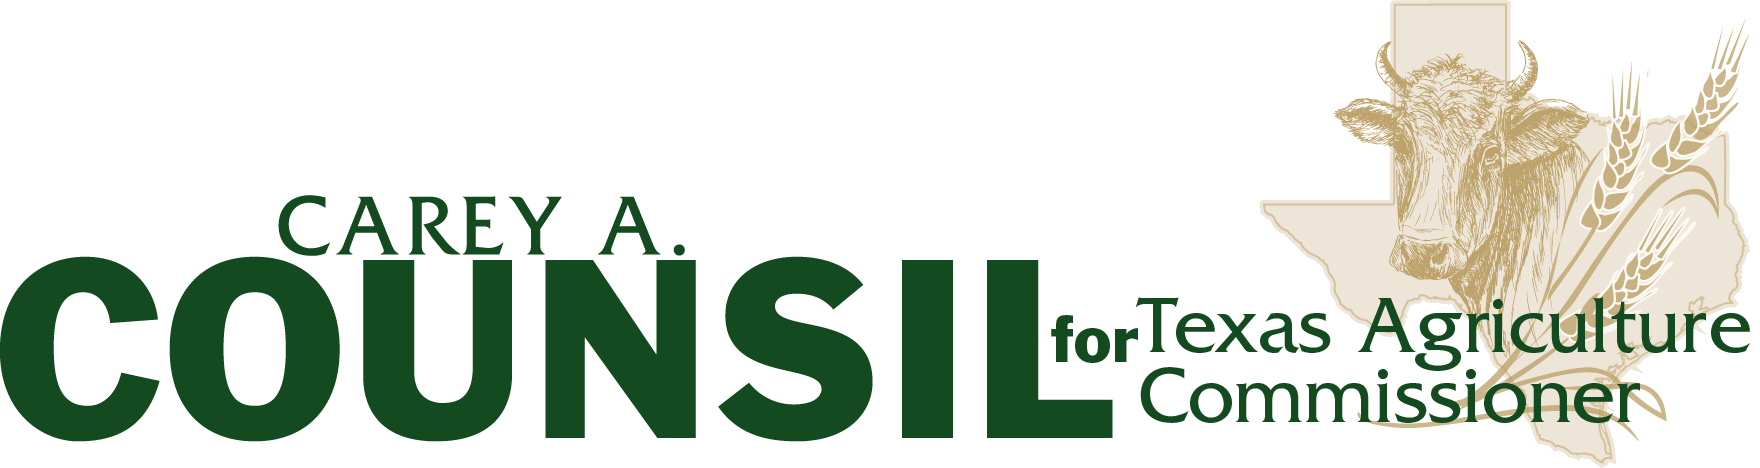 Carey A. Counsil Campaign logo